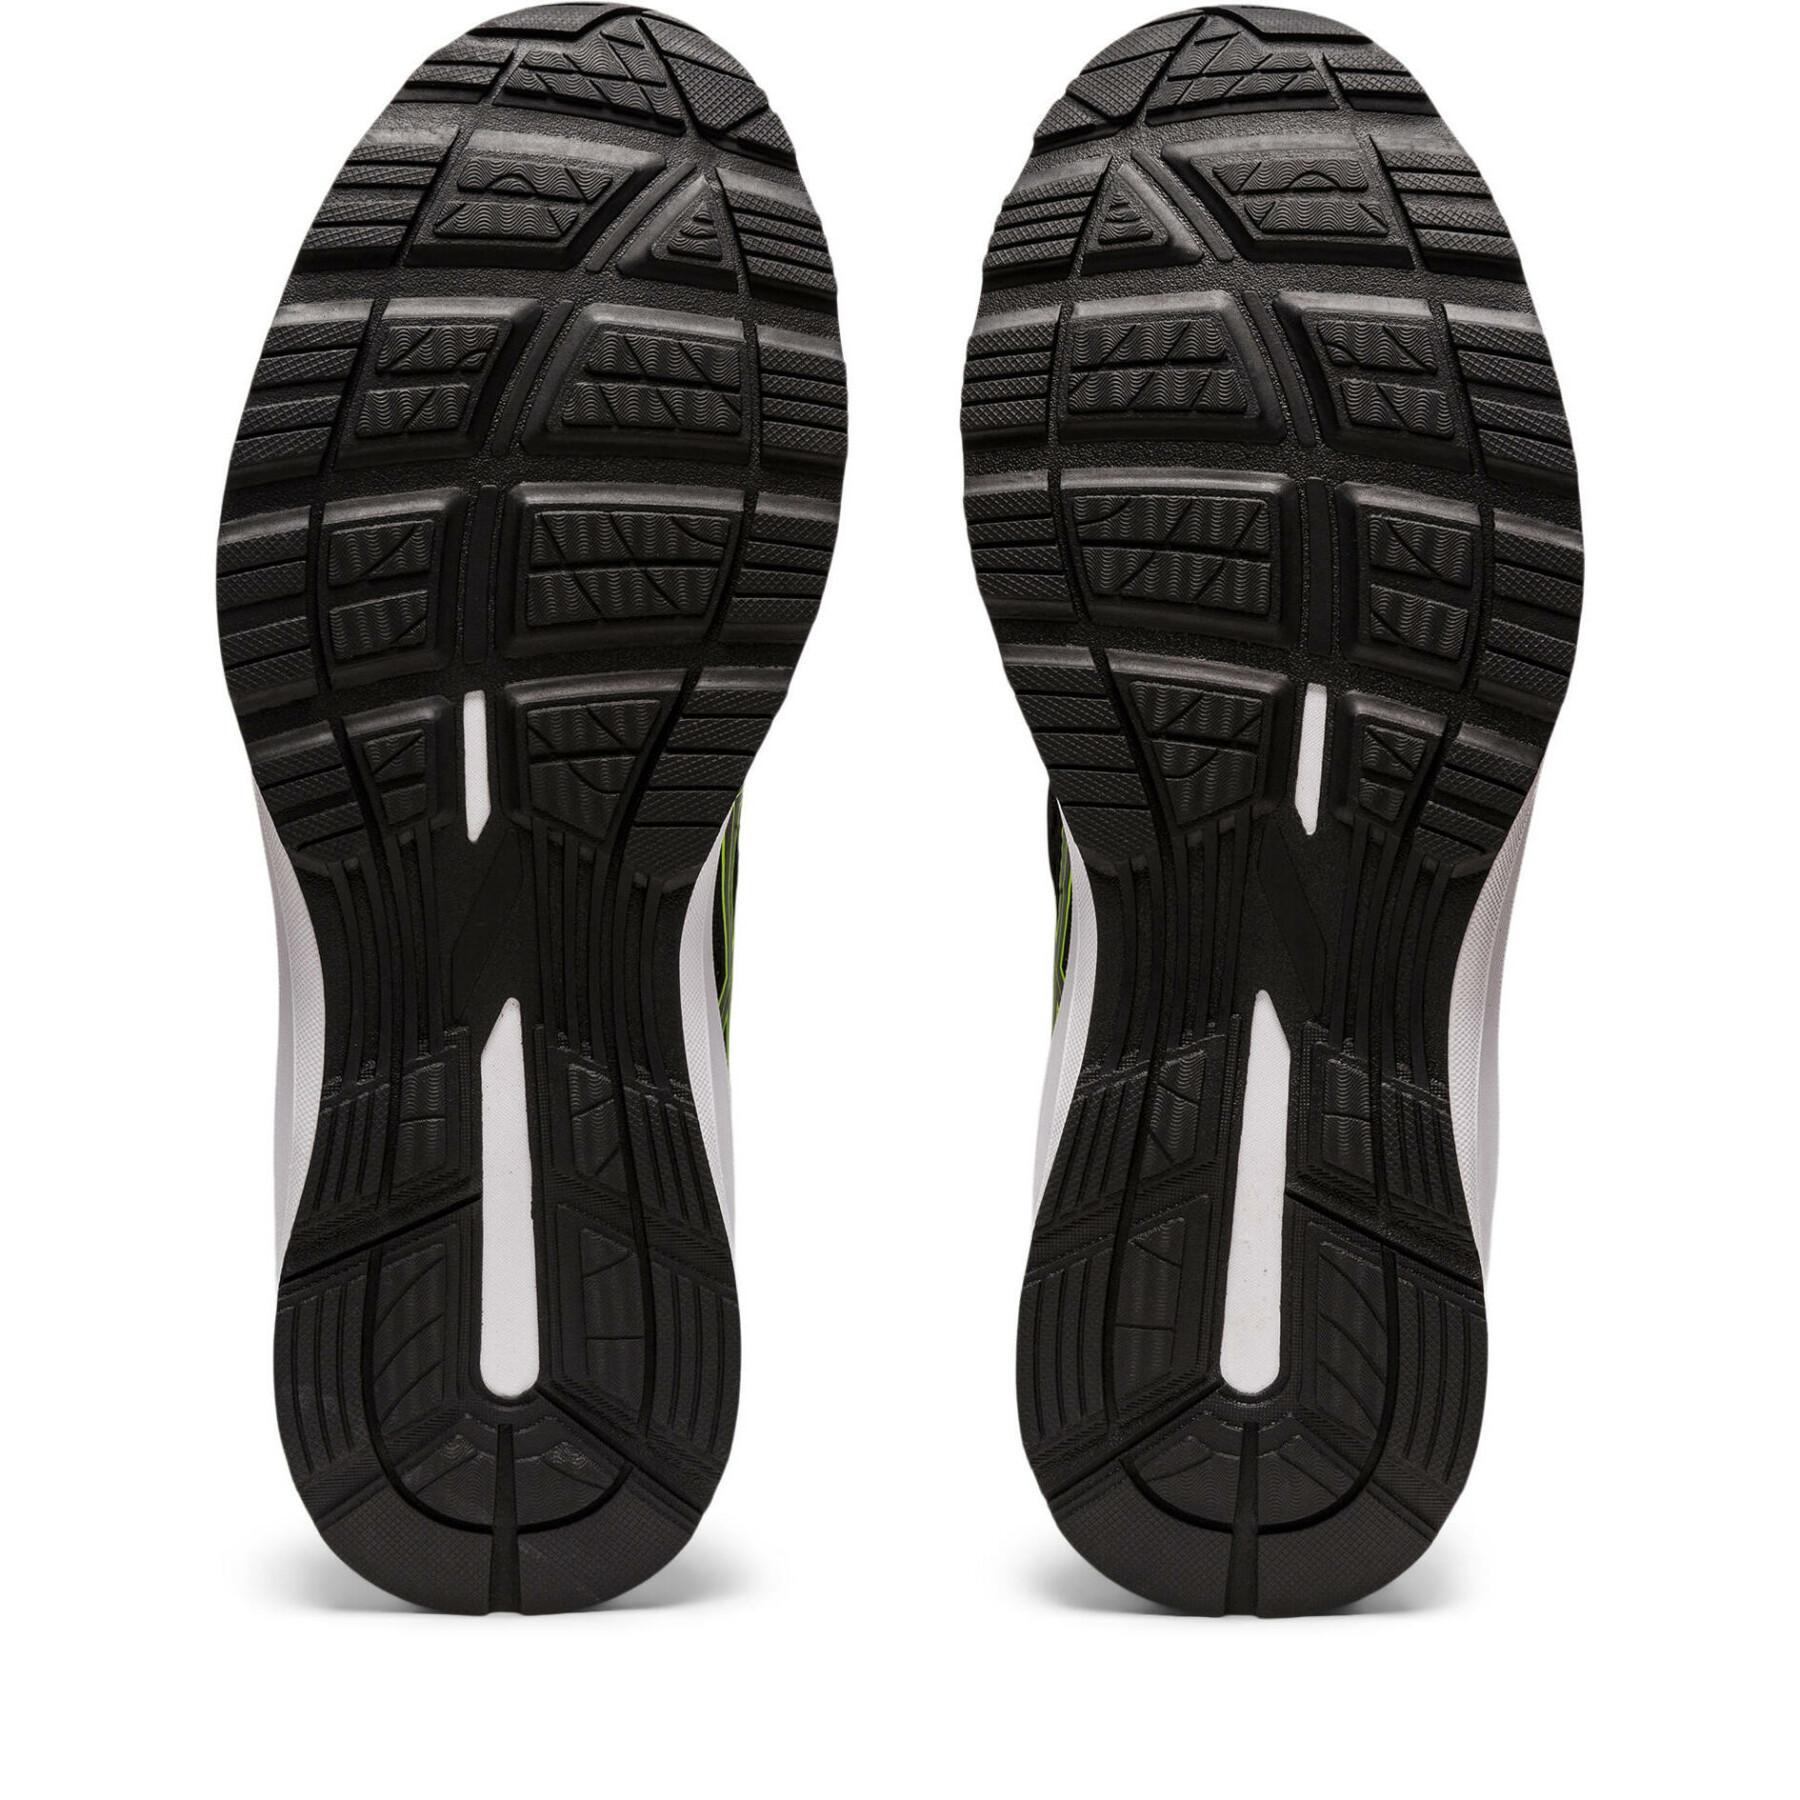 Chaussures de running Asics Gel-Braid